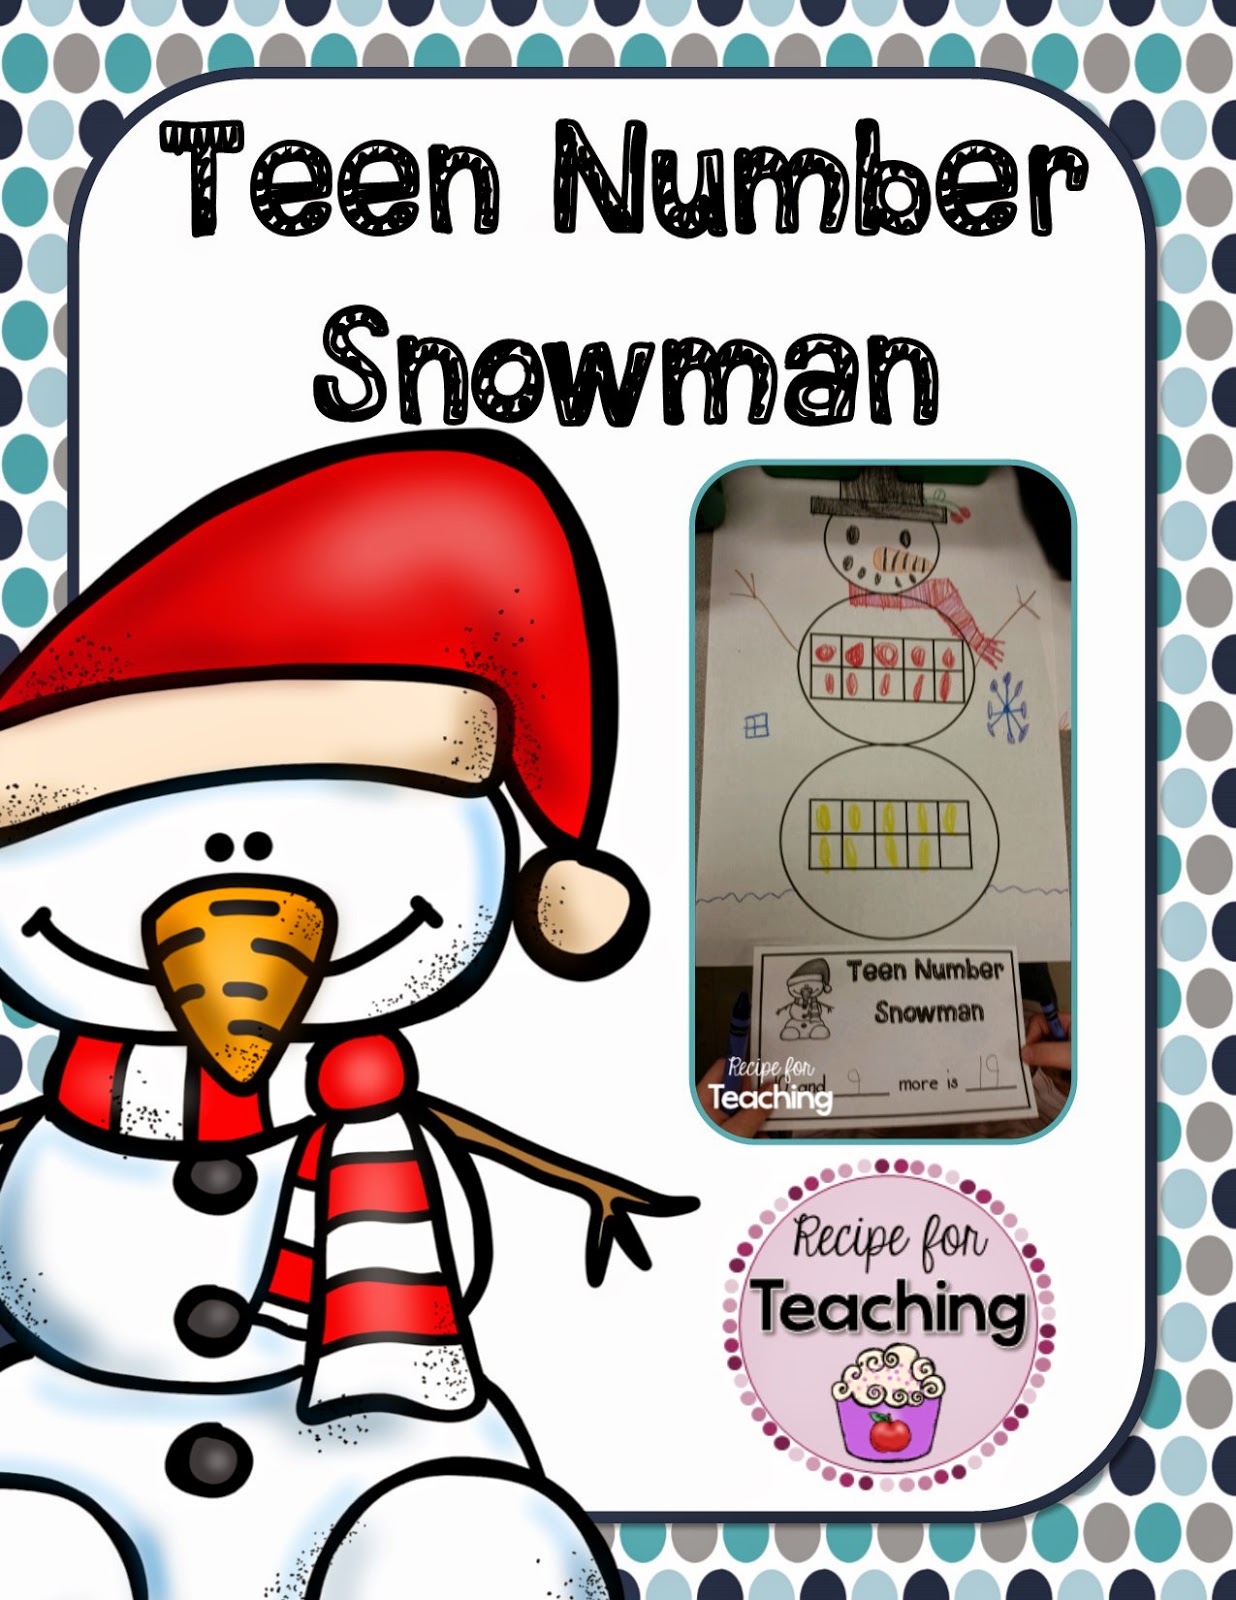 https://www.teacherspayteachers.com/Product/Teen-Number-Snowman-1736968